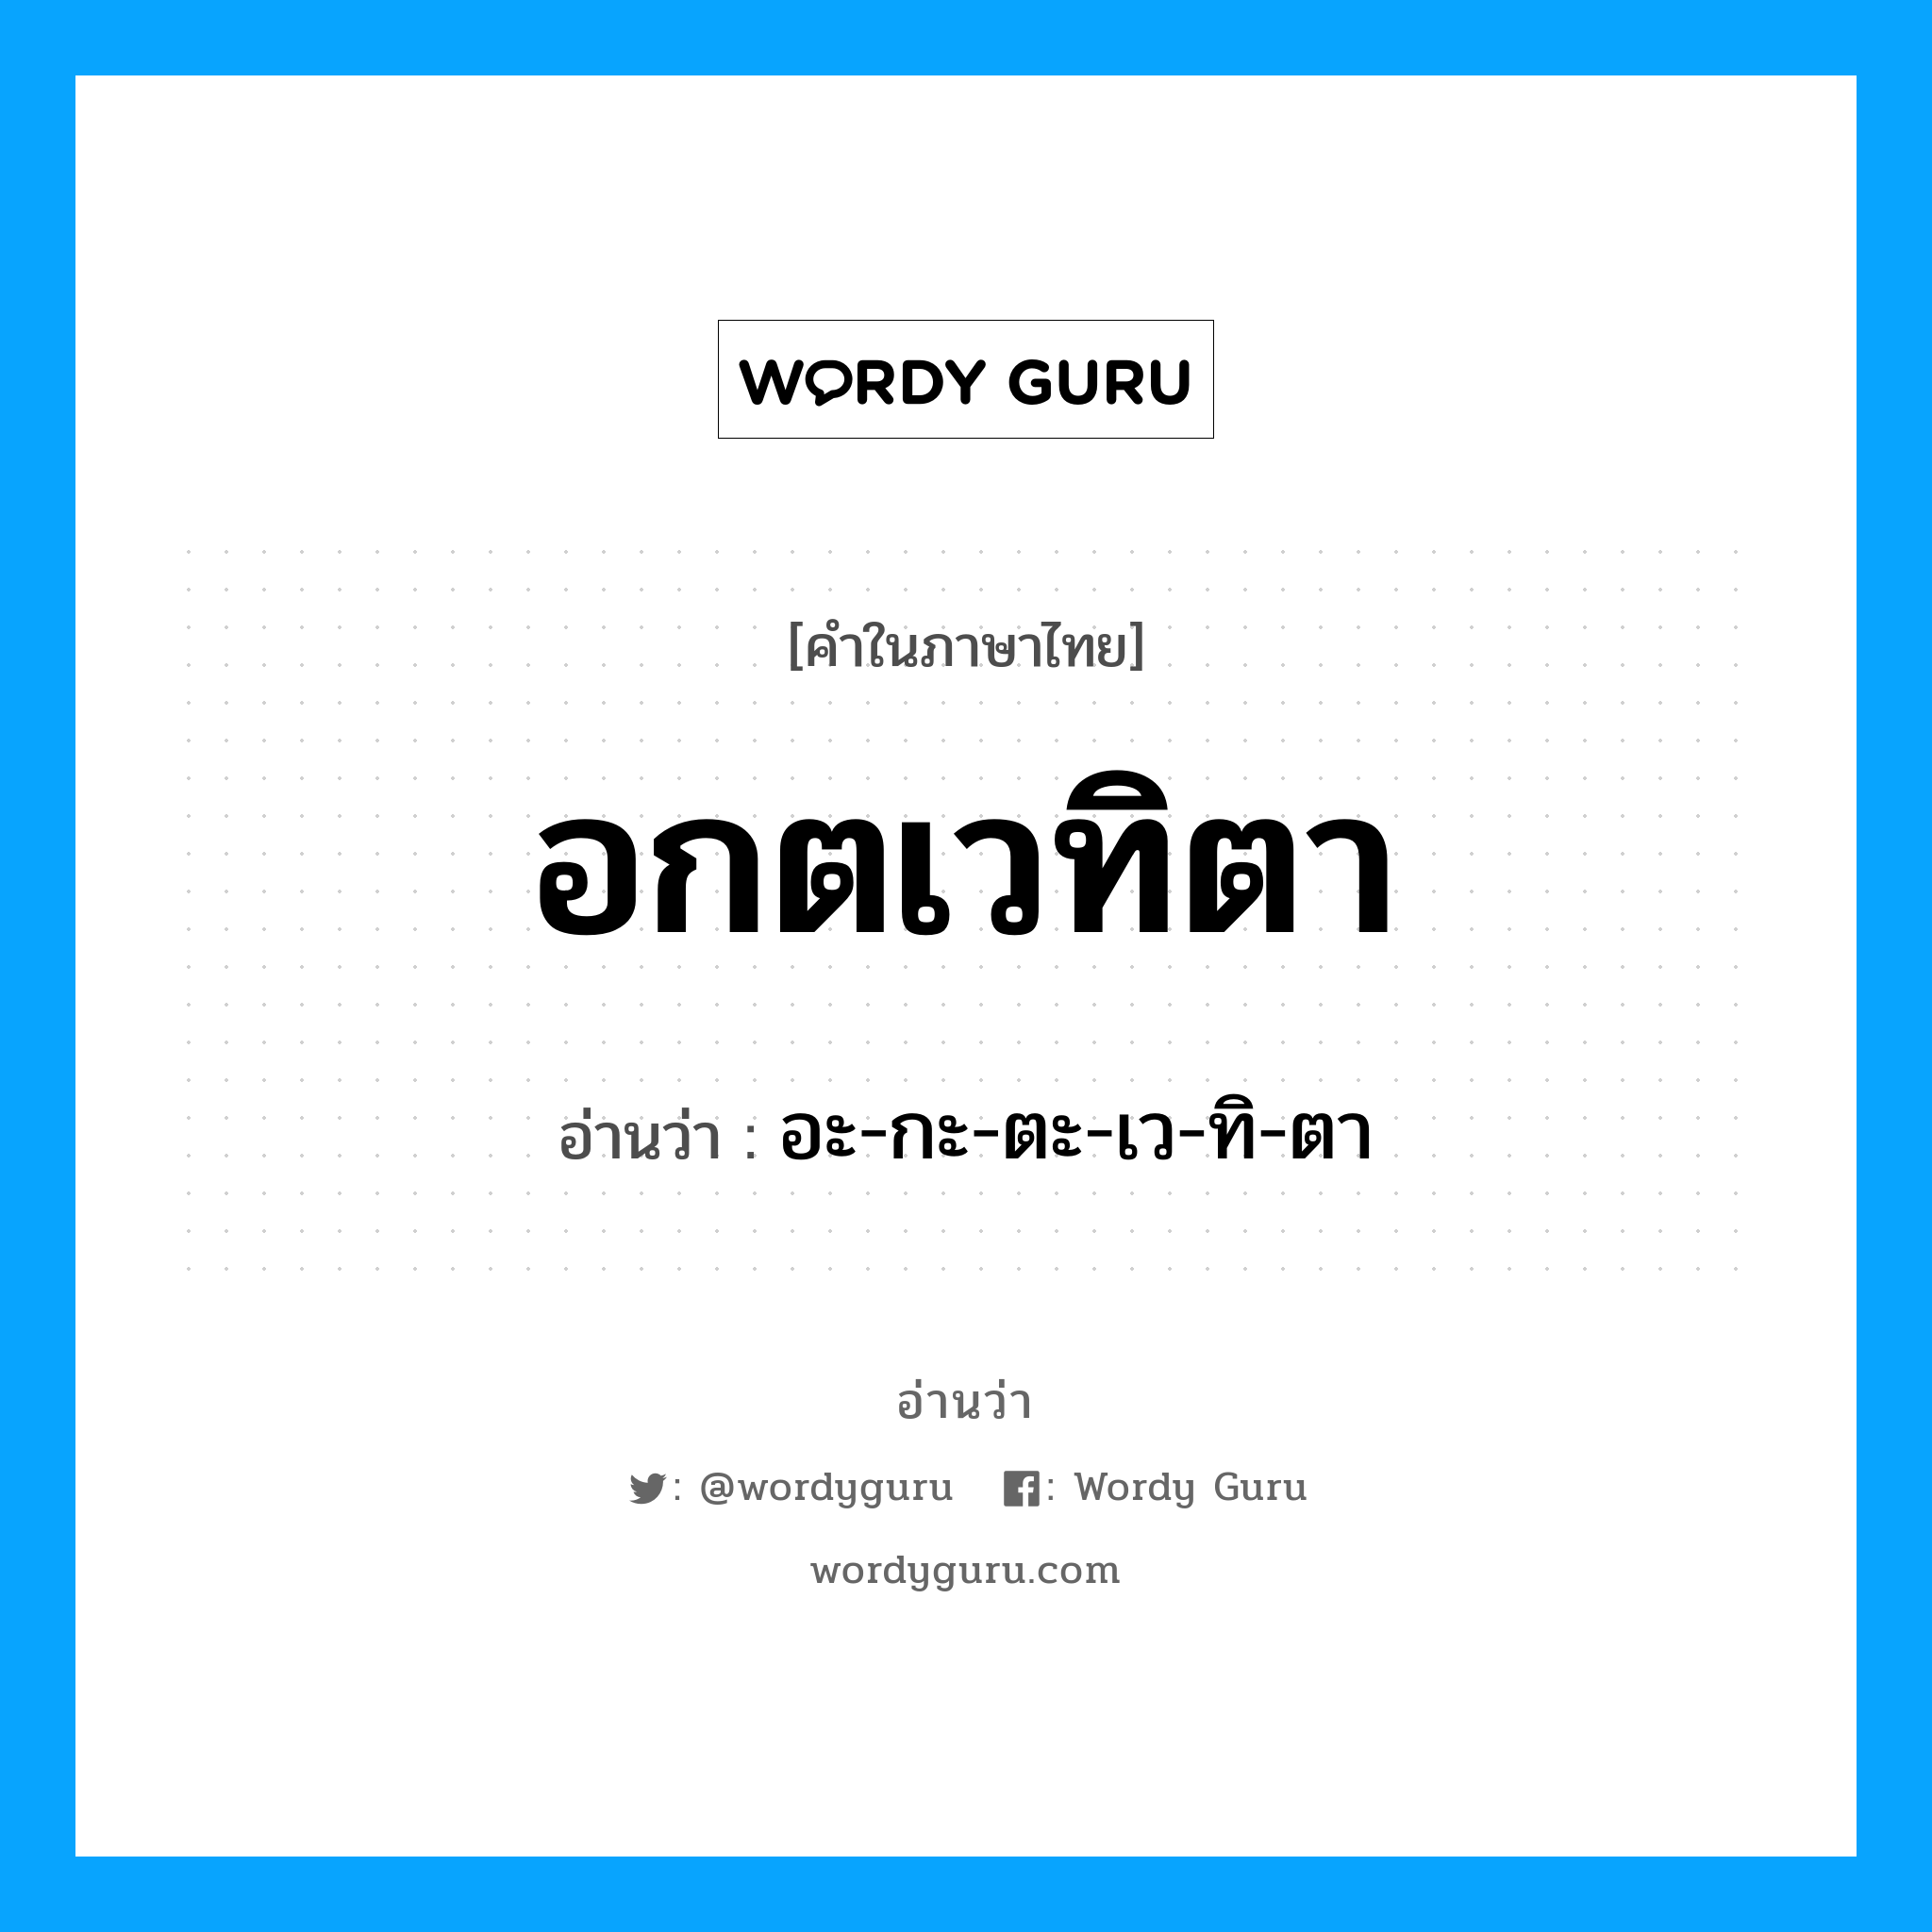 อะ-กะ-ตะ-เว-ทิ-ตา เป็นคำอ่านของคำไหน?, คำในภาษาไทย อะ-กะ-ตะ-เว-ทิ-ตา อ่านว่า อกตเวทิตา